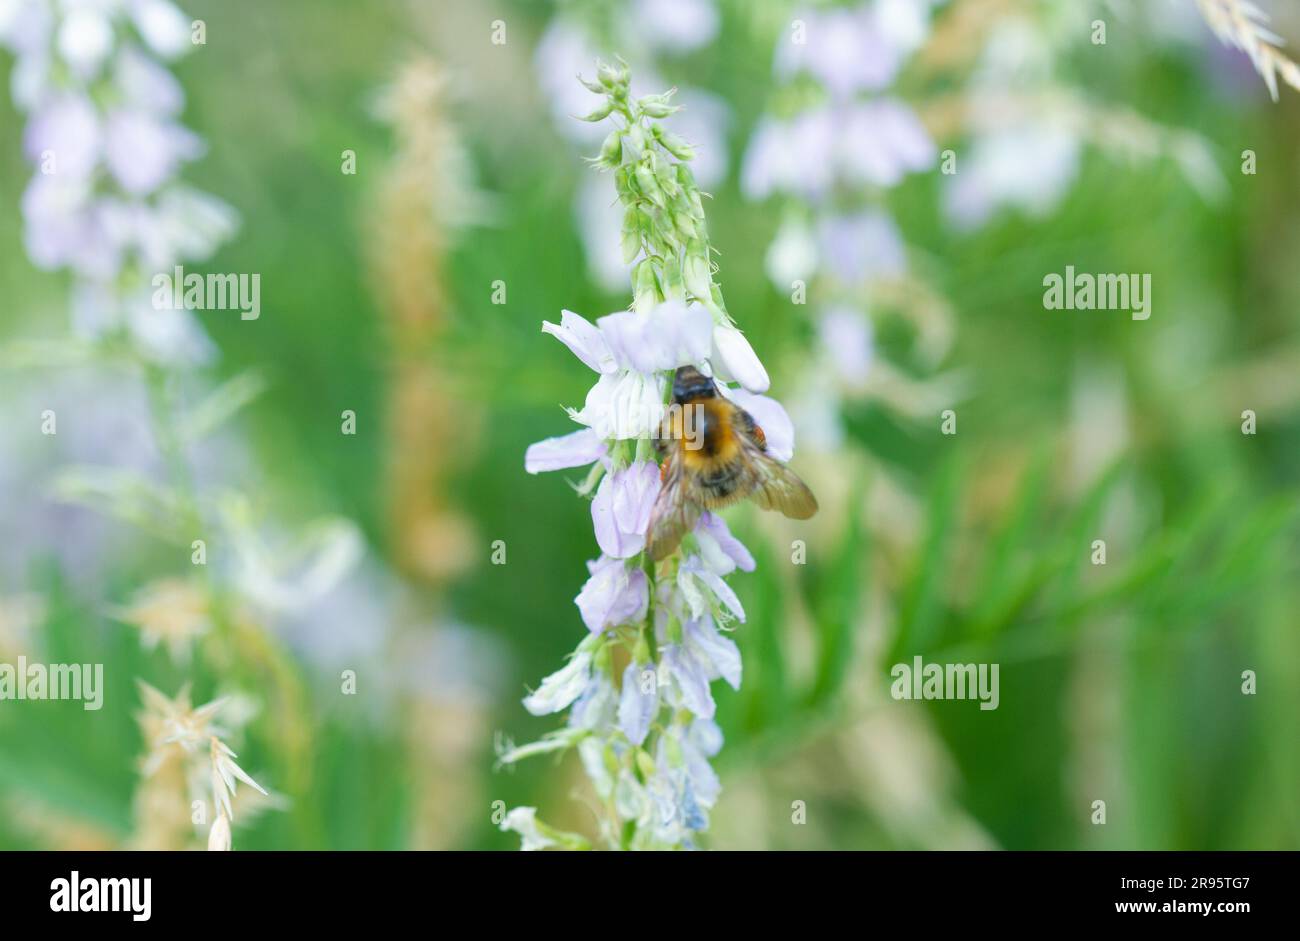 Essex, Royaume-Uni. 24/06/23. Environnement, faune et nature. Les populations d'abeilles continuent d'être affectées de façon préjudiciable, à l'échelle mondiale, par une combinaison d'agents stressants biologiques, chimiques et environnementaux, dont l'acarien de varroa et le petit coléoptère des ruches qui attaquent les colonies d'abeilles, ainsi que par la prédation par la propagation des Hornets asiatiques. Les populations d'abeilles ont des répercussions négatives sur le changement climatique et sont touchées par une perte croissante d'habitat due aux changements dans l'utilisation des terres, aux nouveaux développements urbains, à l'agriculture intensive et aux pesticides. Helen Cowles / Alamy Live News. Banque D'Images